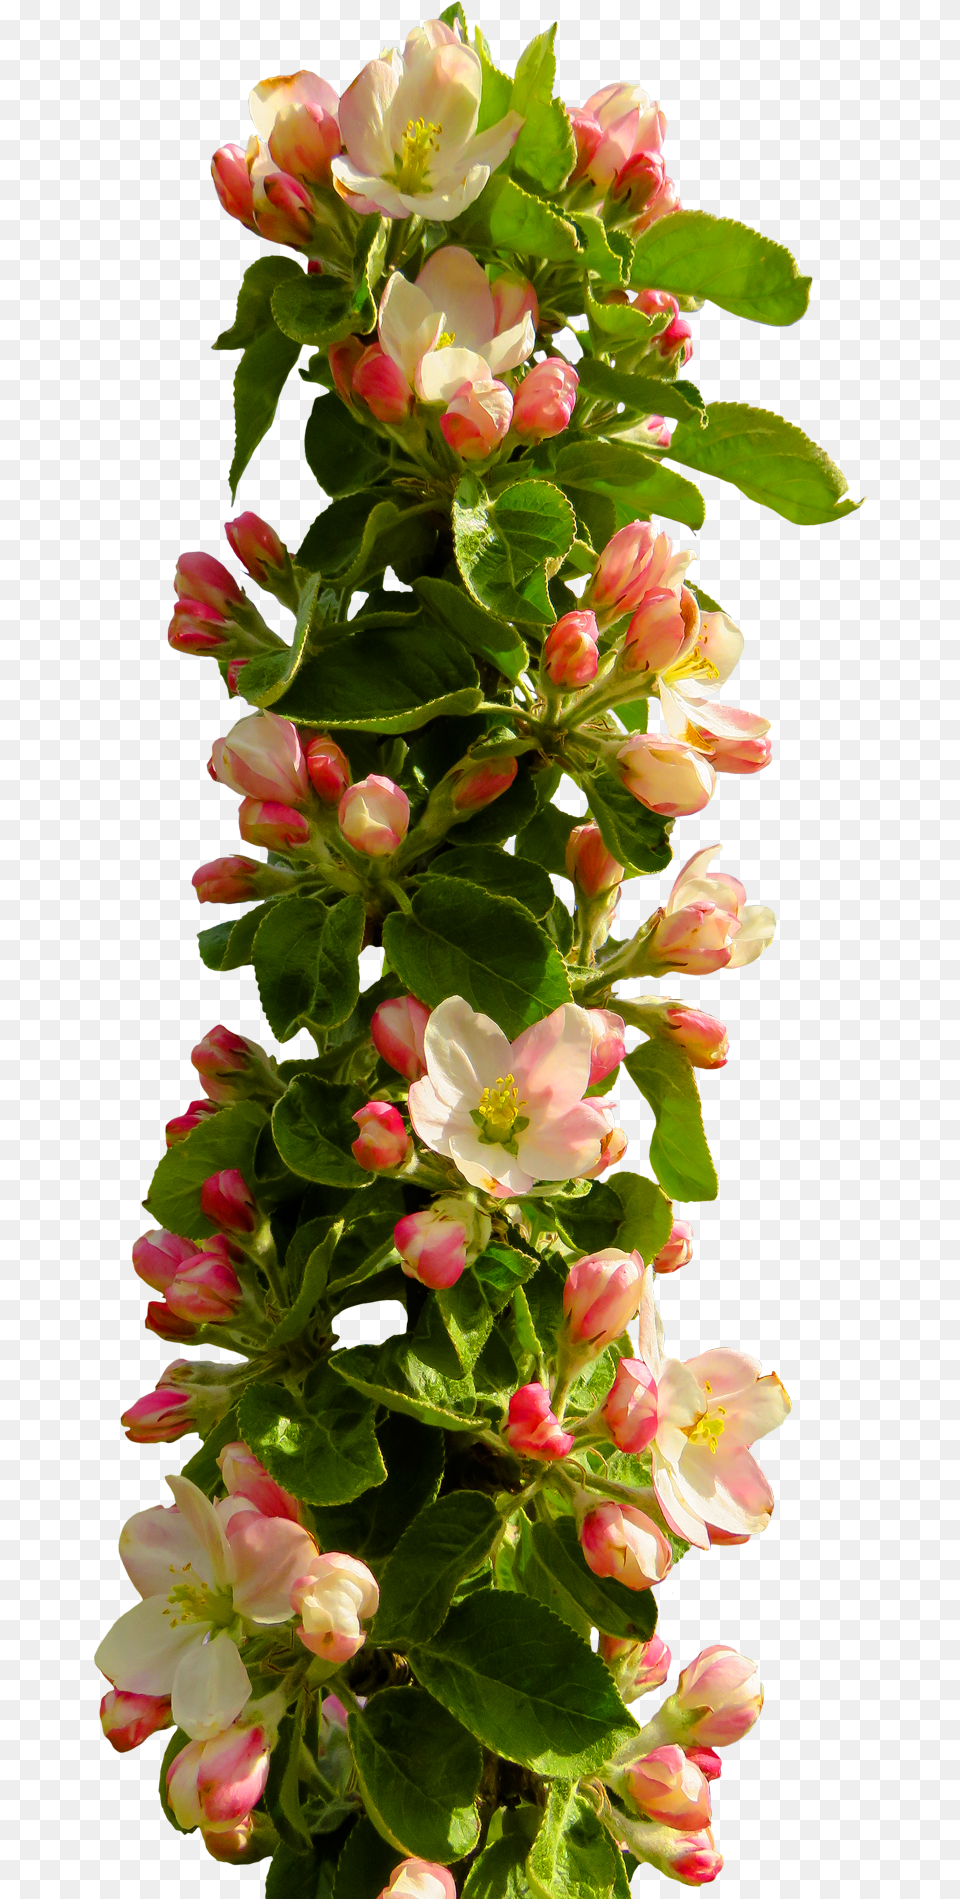 Rose Flower Image Pngpix Format Flowers Hd, Flower Arrangement, Flower Bouquet, Geranium, Petal Free Transparent Png